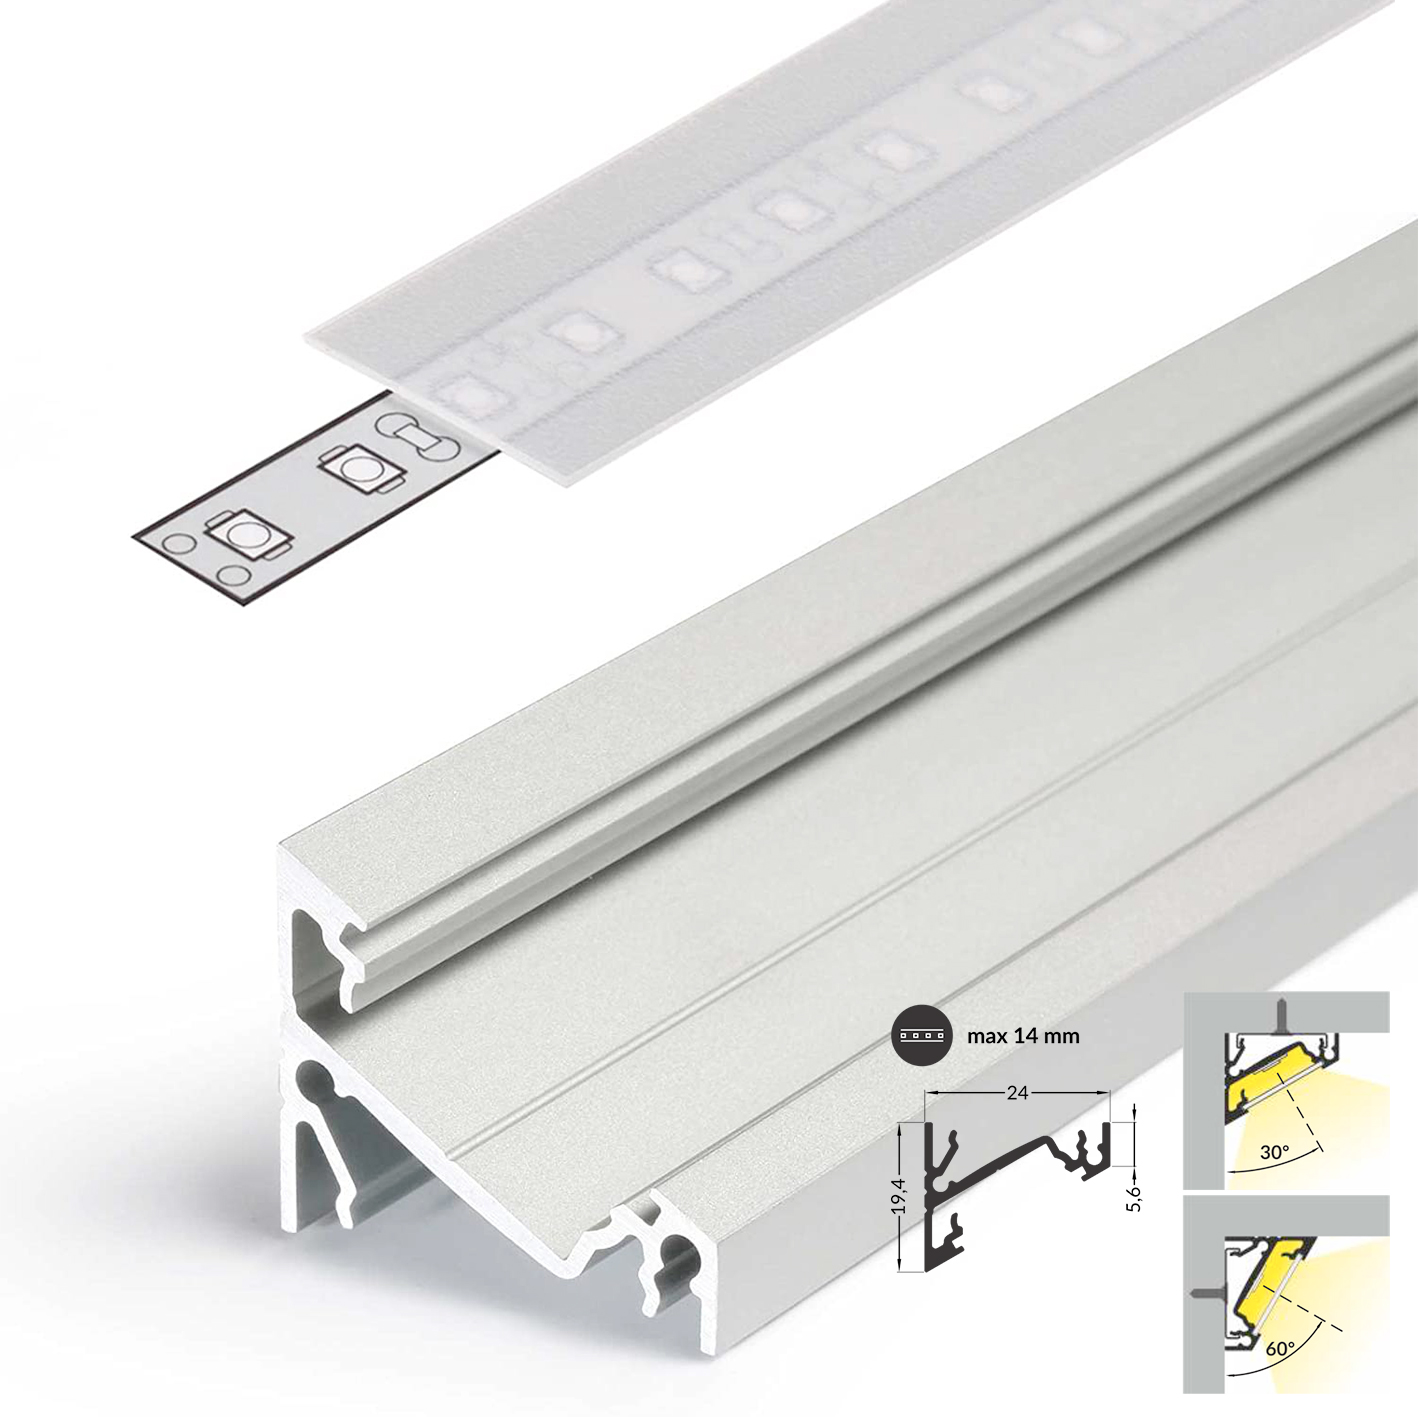 LED Aluminium Eckprofil Set CORNER 14mm 2m eloxiert inkl. Blende  (klar/transparent), Befestigungsclips und Endkappen für LED-Streifen/indirekte  Beleuchtung-522066